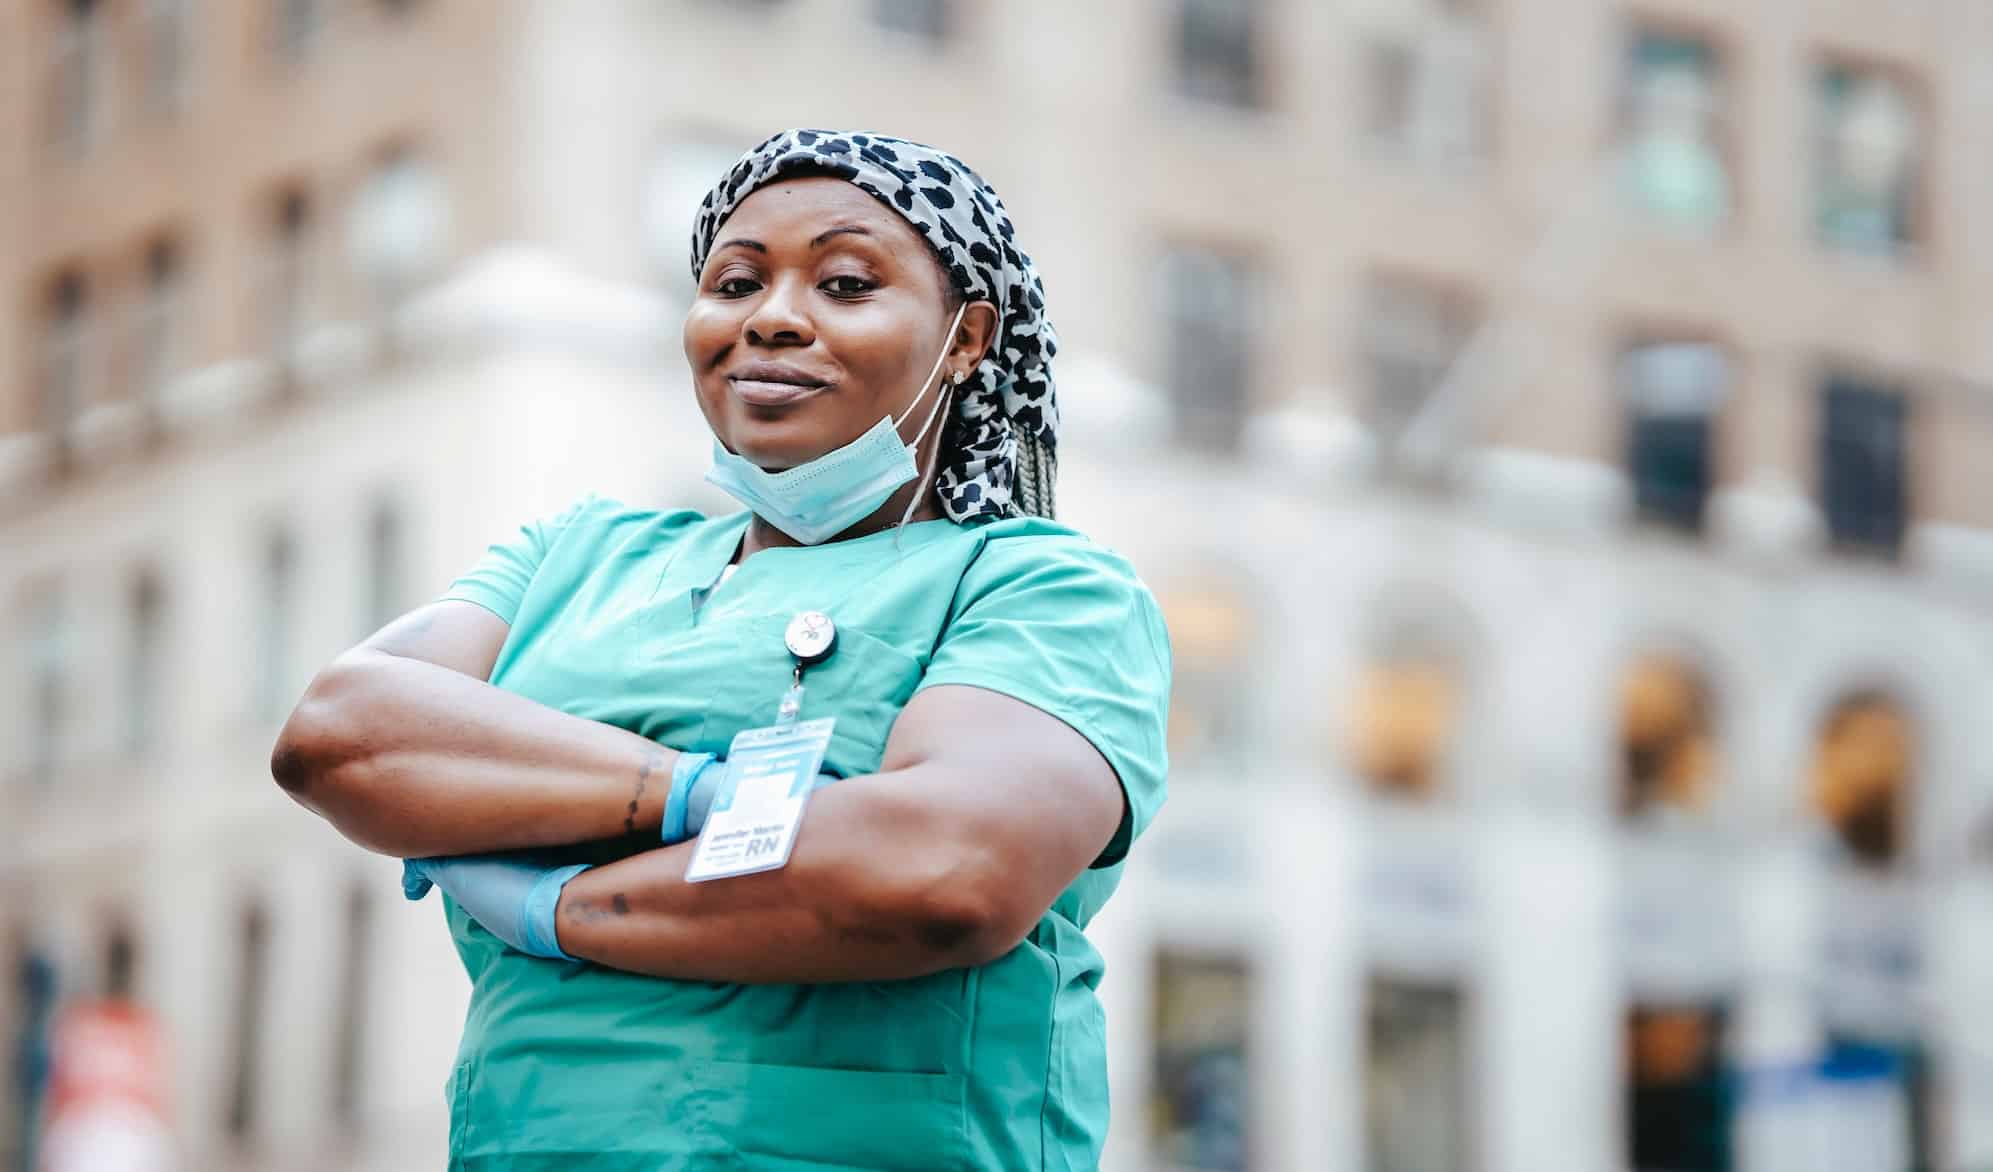 Understanding diversity - Nurse standing